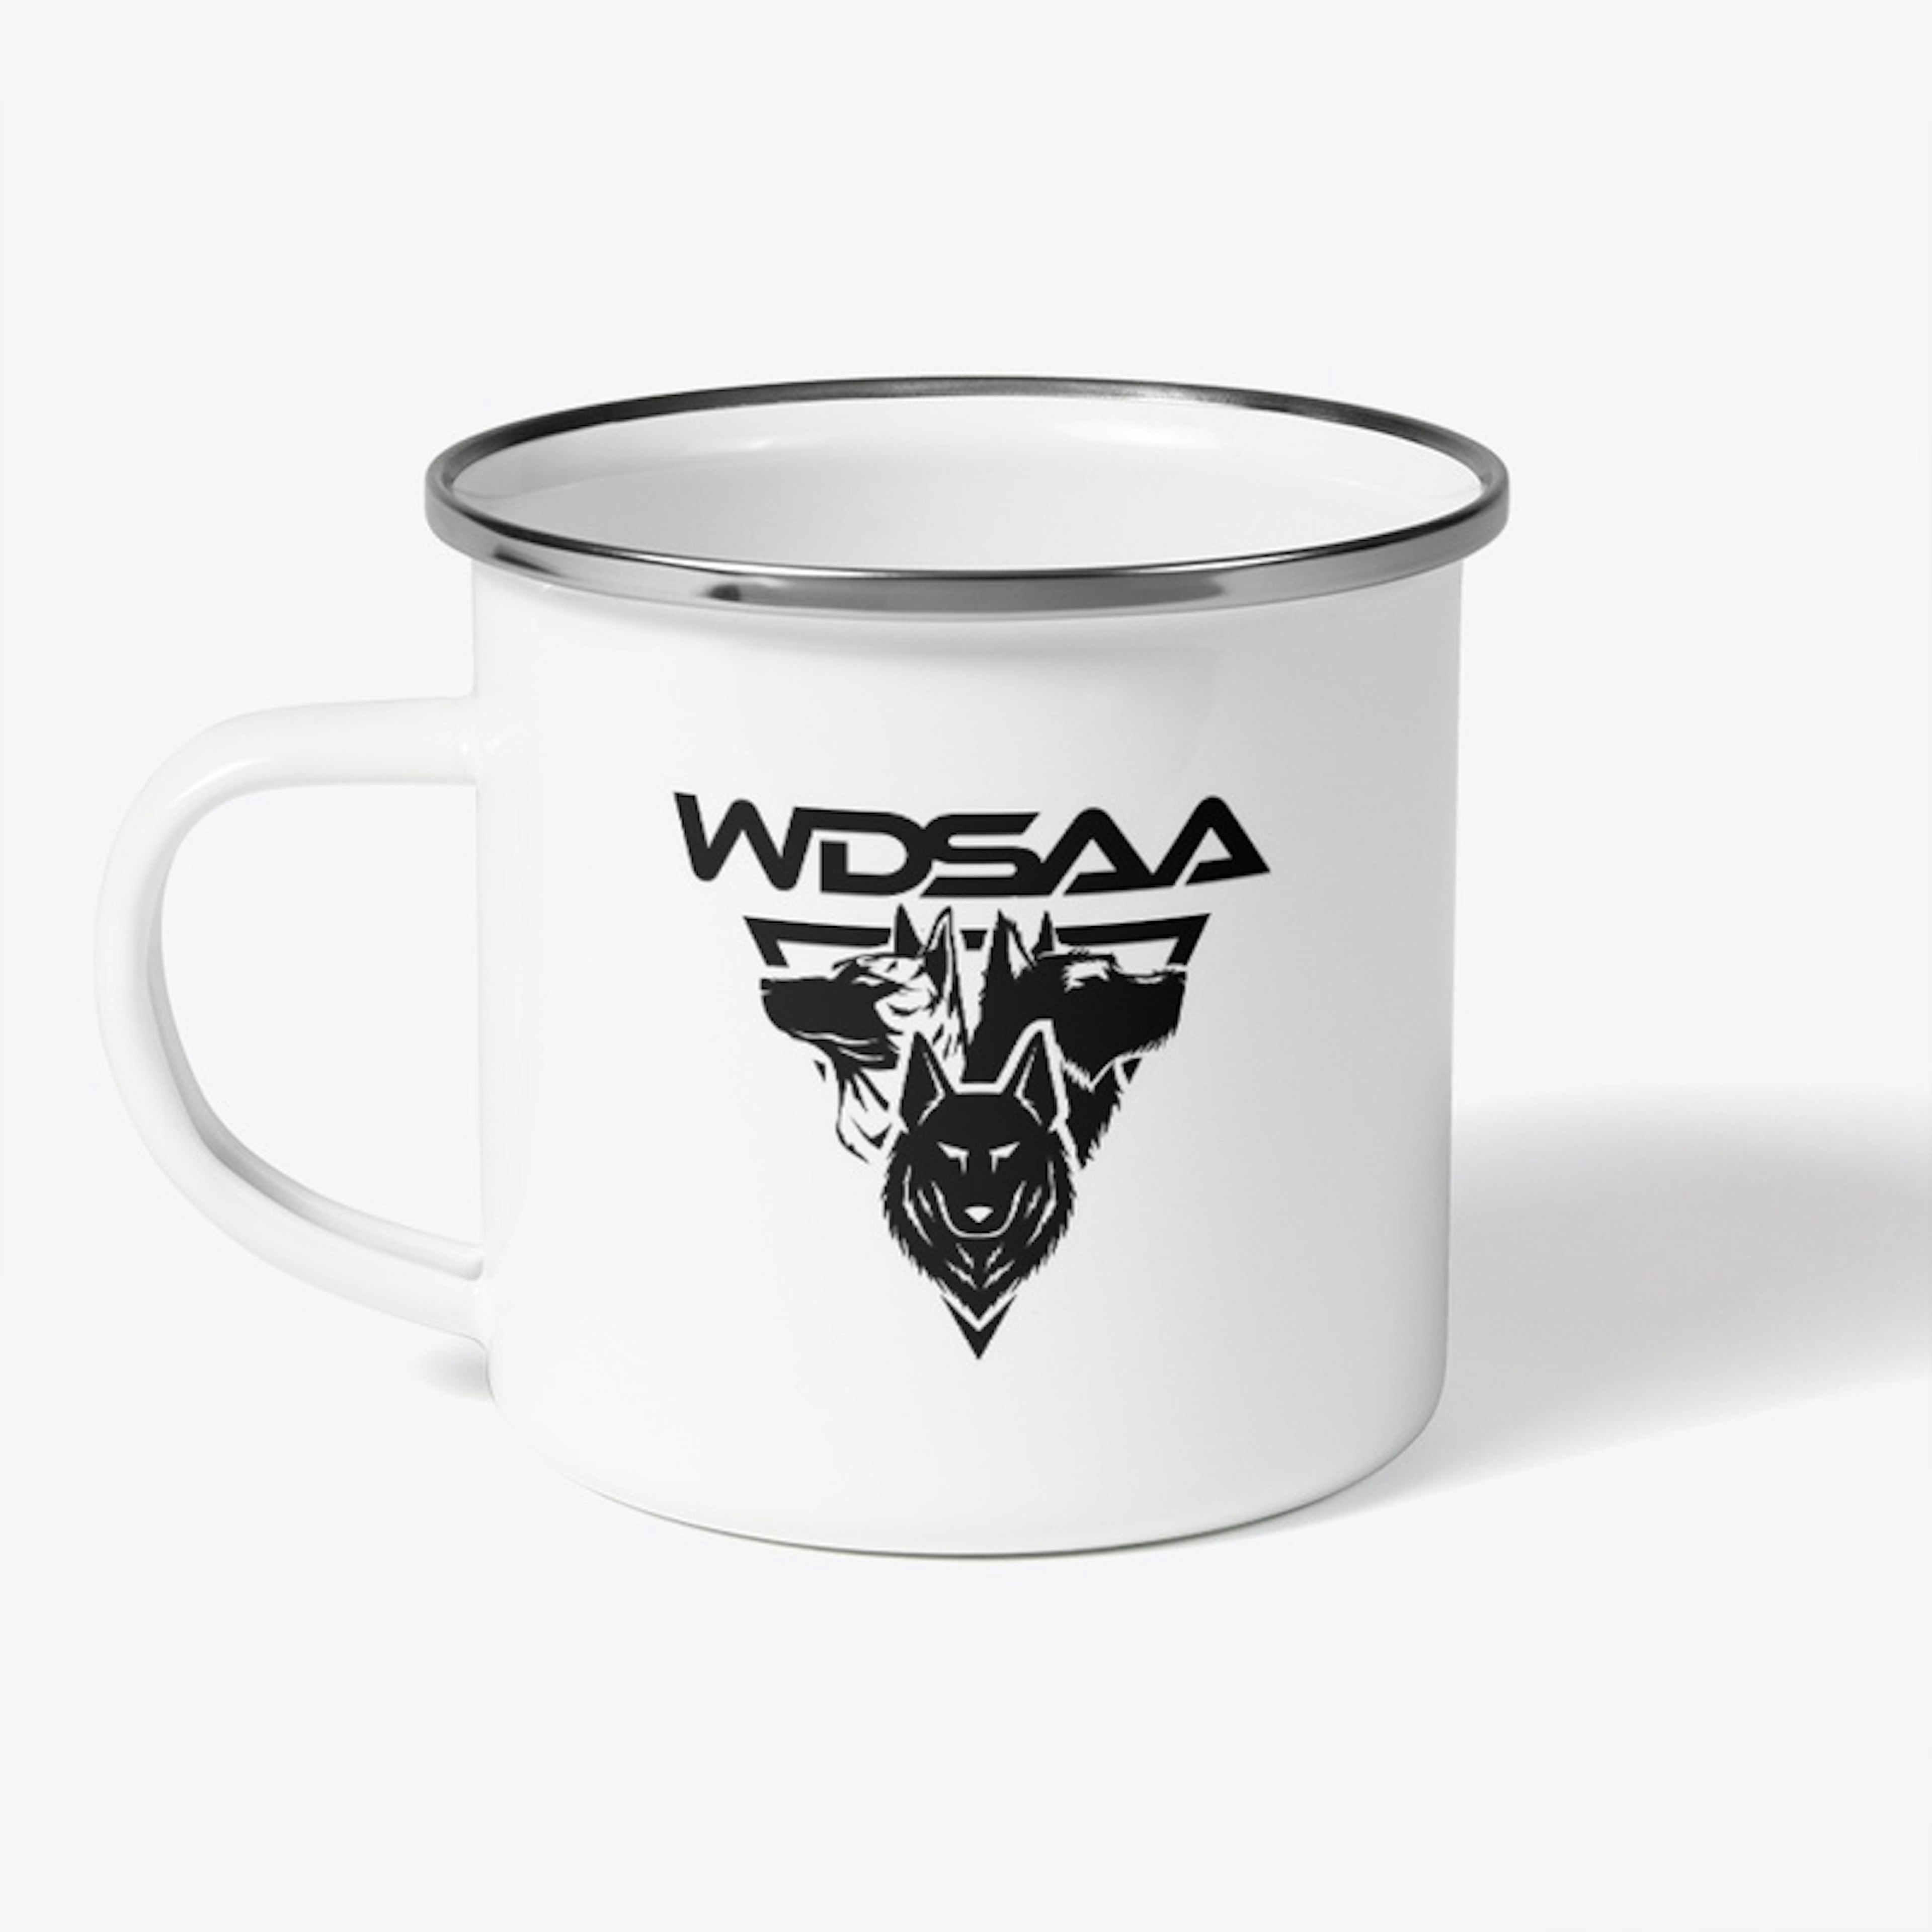 WDSAA Camping Mug